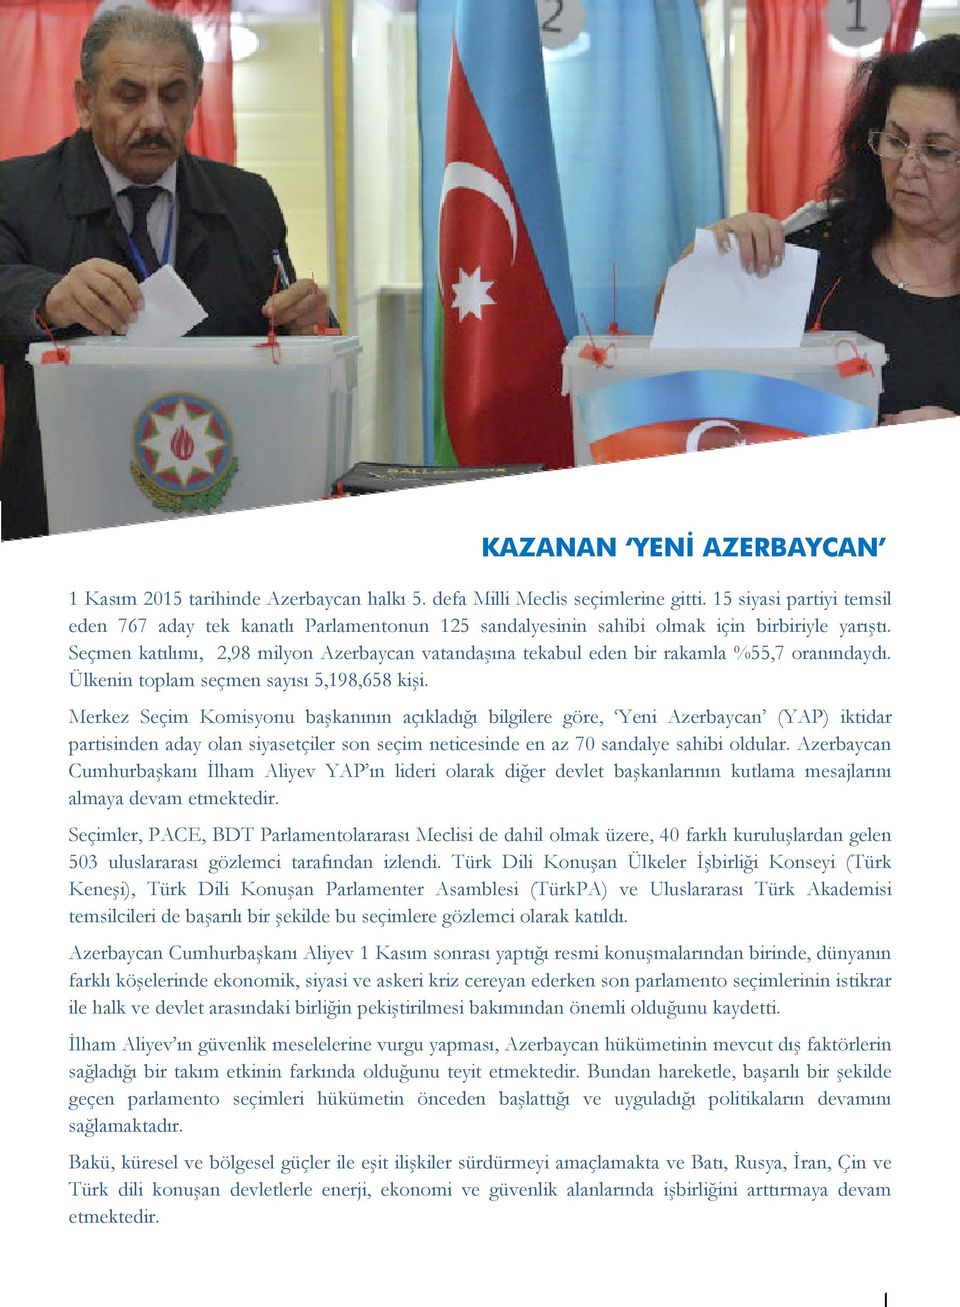 Seçmen katılımı, 2,98 milyon Azerbaycan vatandaşına tekabul eden bir rakamla %55,7 oranındaydı. Ülkenin toplam seçmen sayısı 5,198,658 kişi.